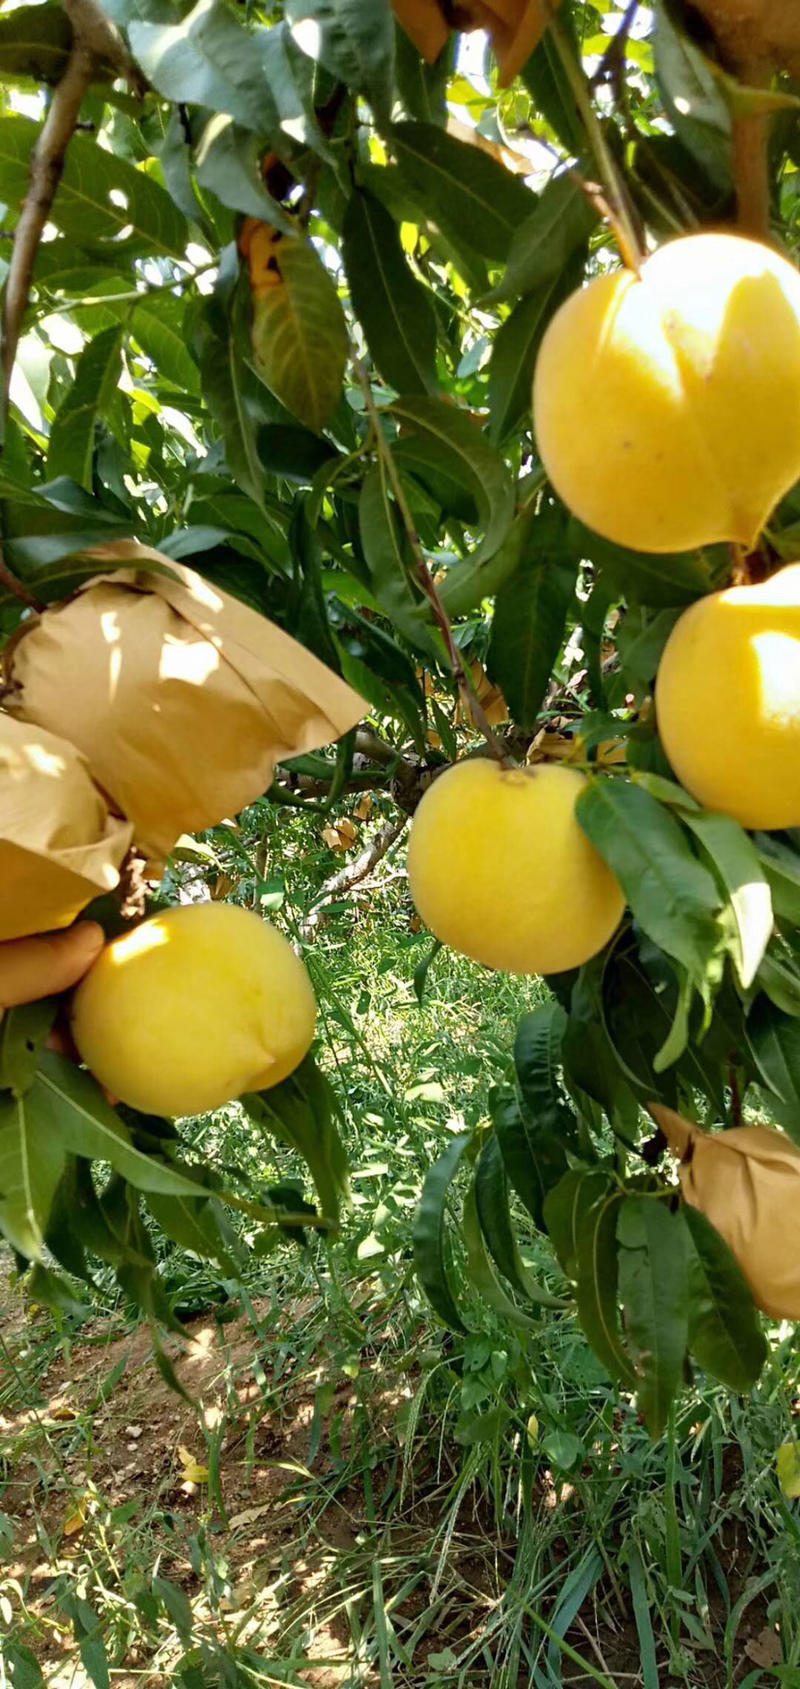 黄金密1号桃树苗保证纯度包成活技术指导